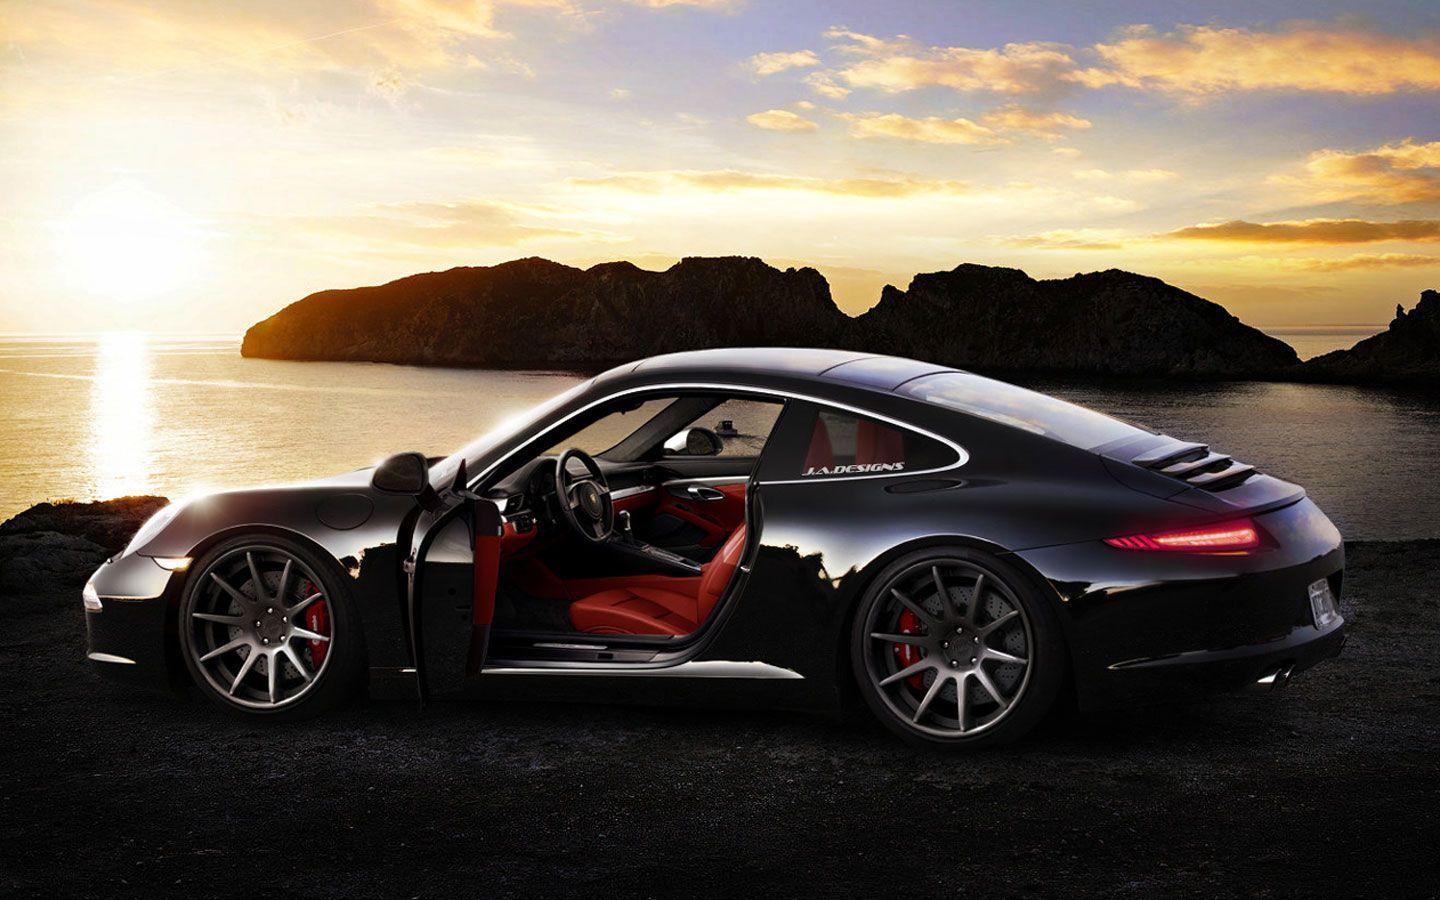 Porsche Cayman Black Edition Wallpaper · Porsche Wallpaper. Best